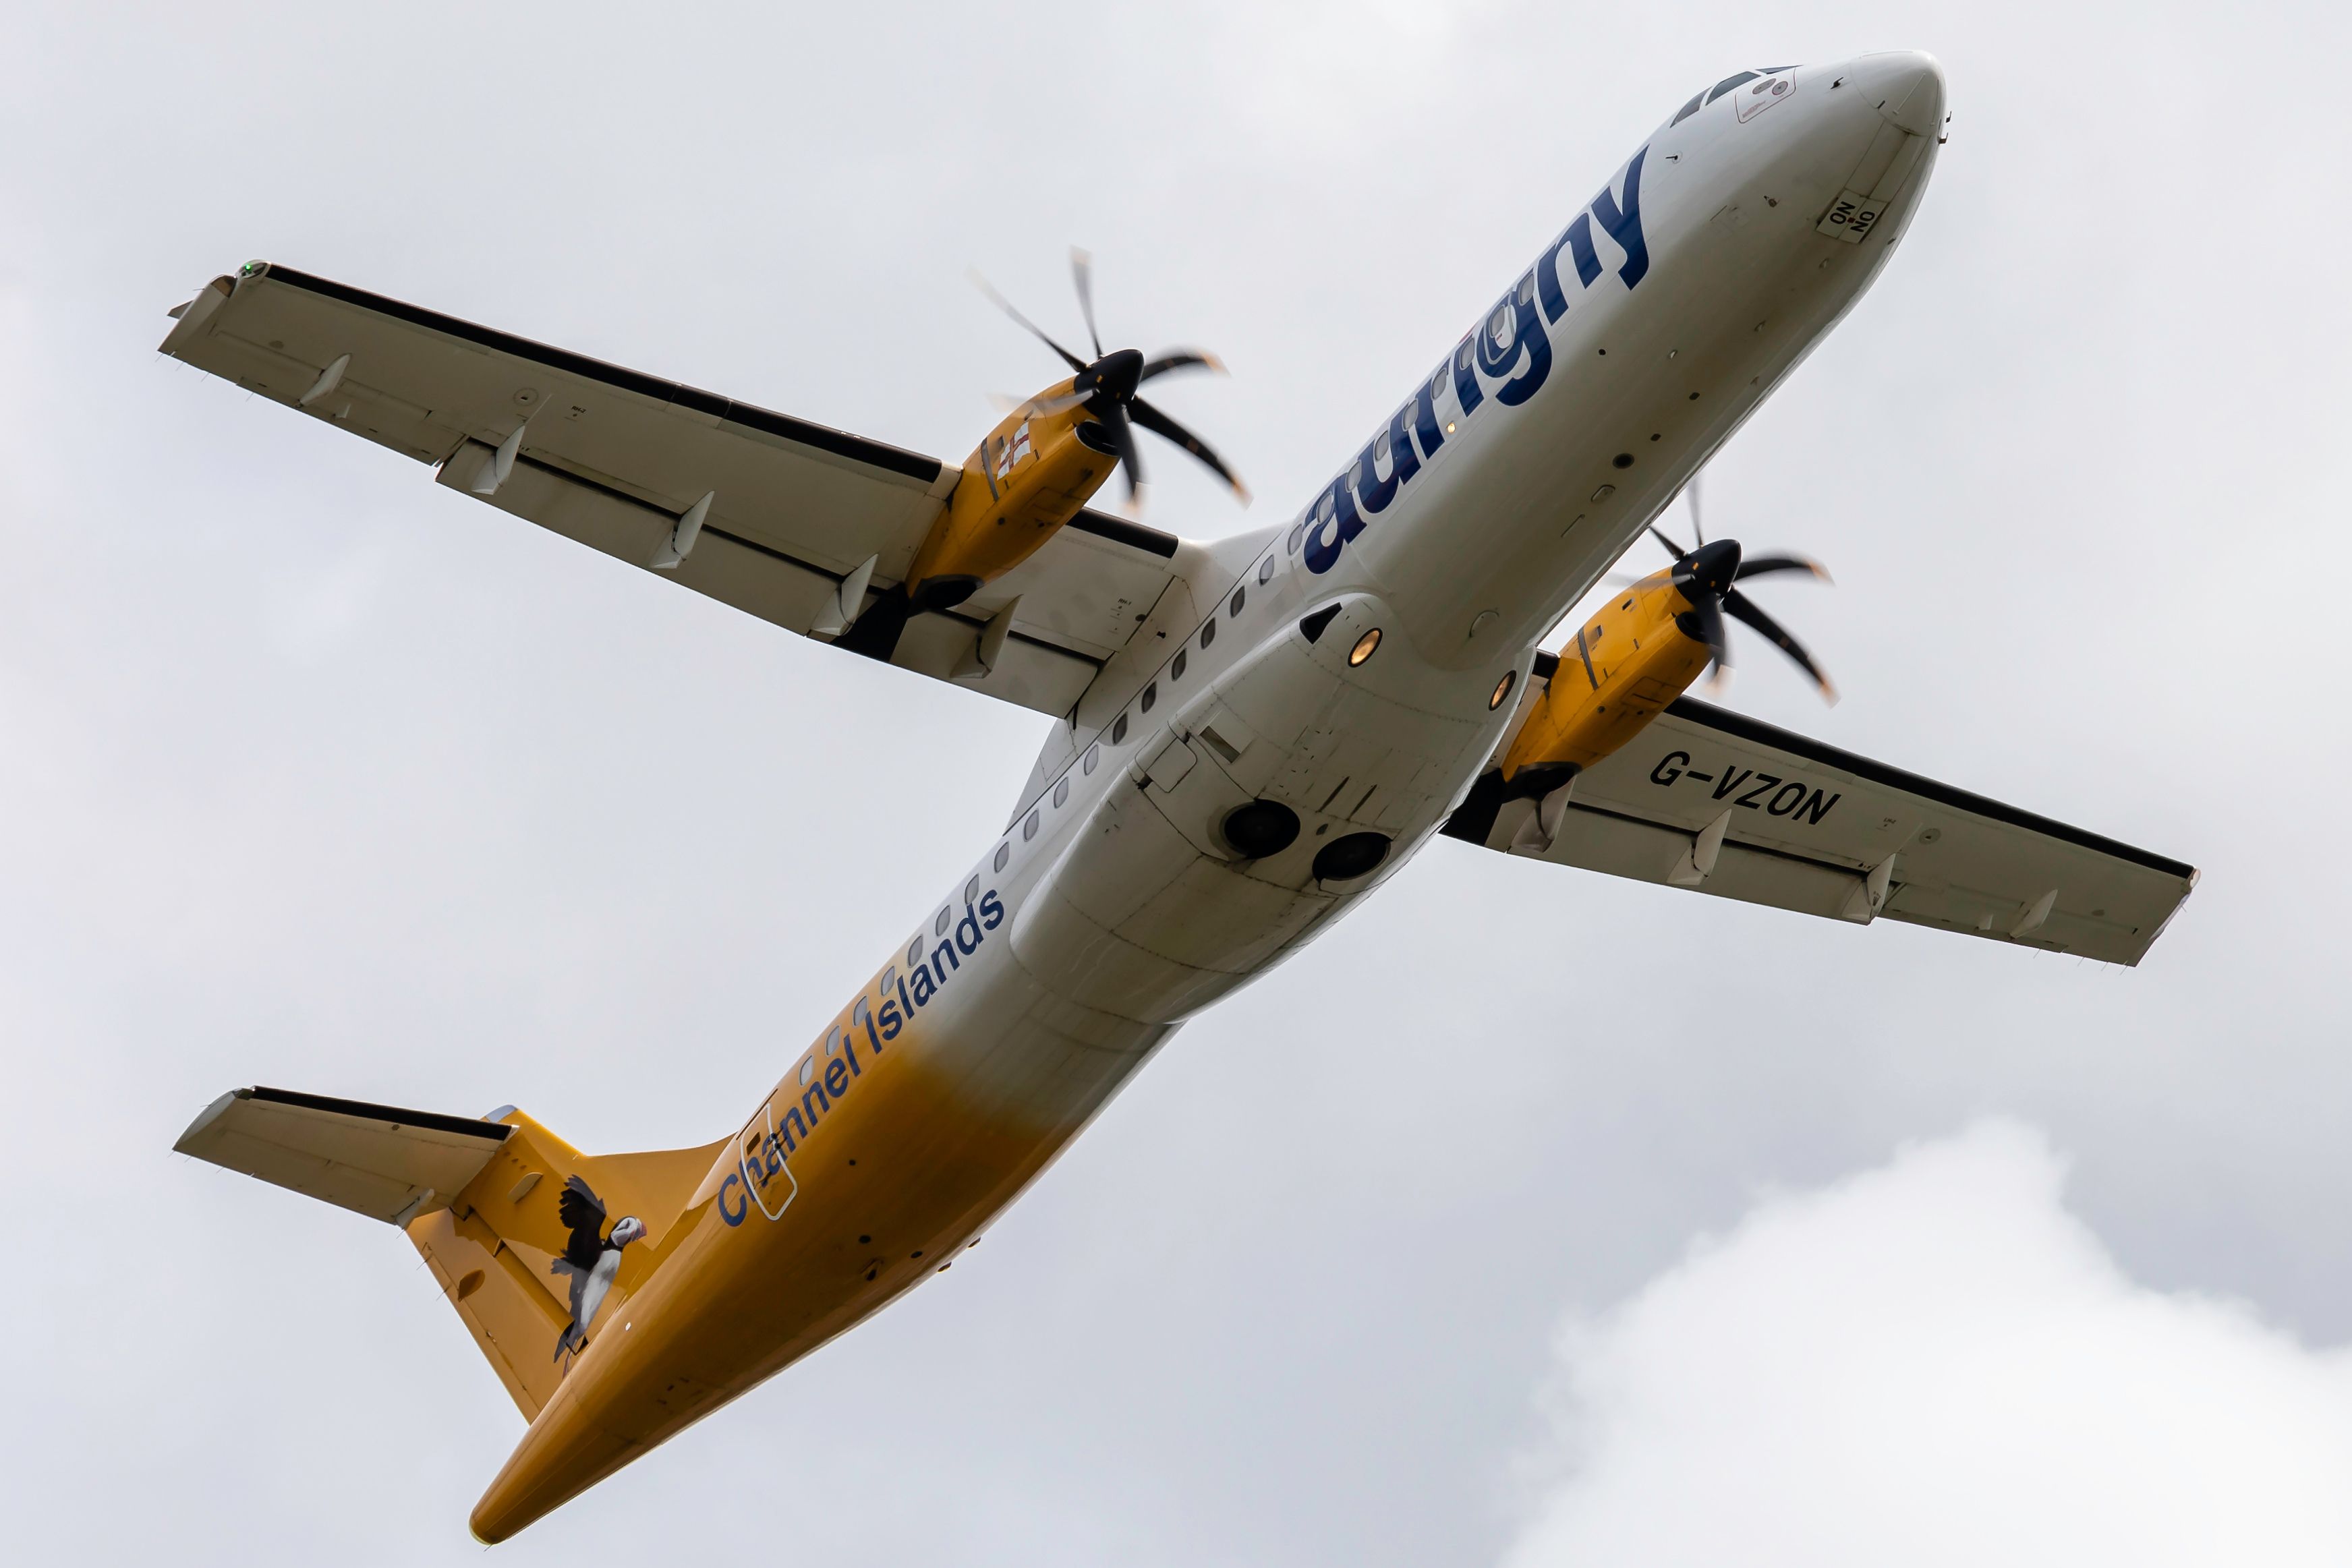 An Aurigny Air Services ATR aircraft flying 